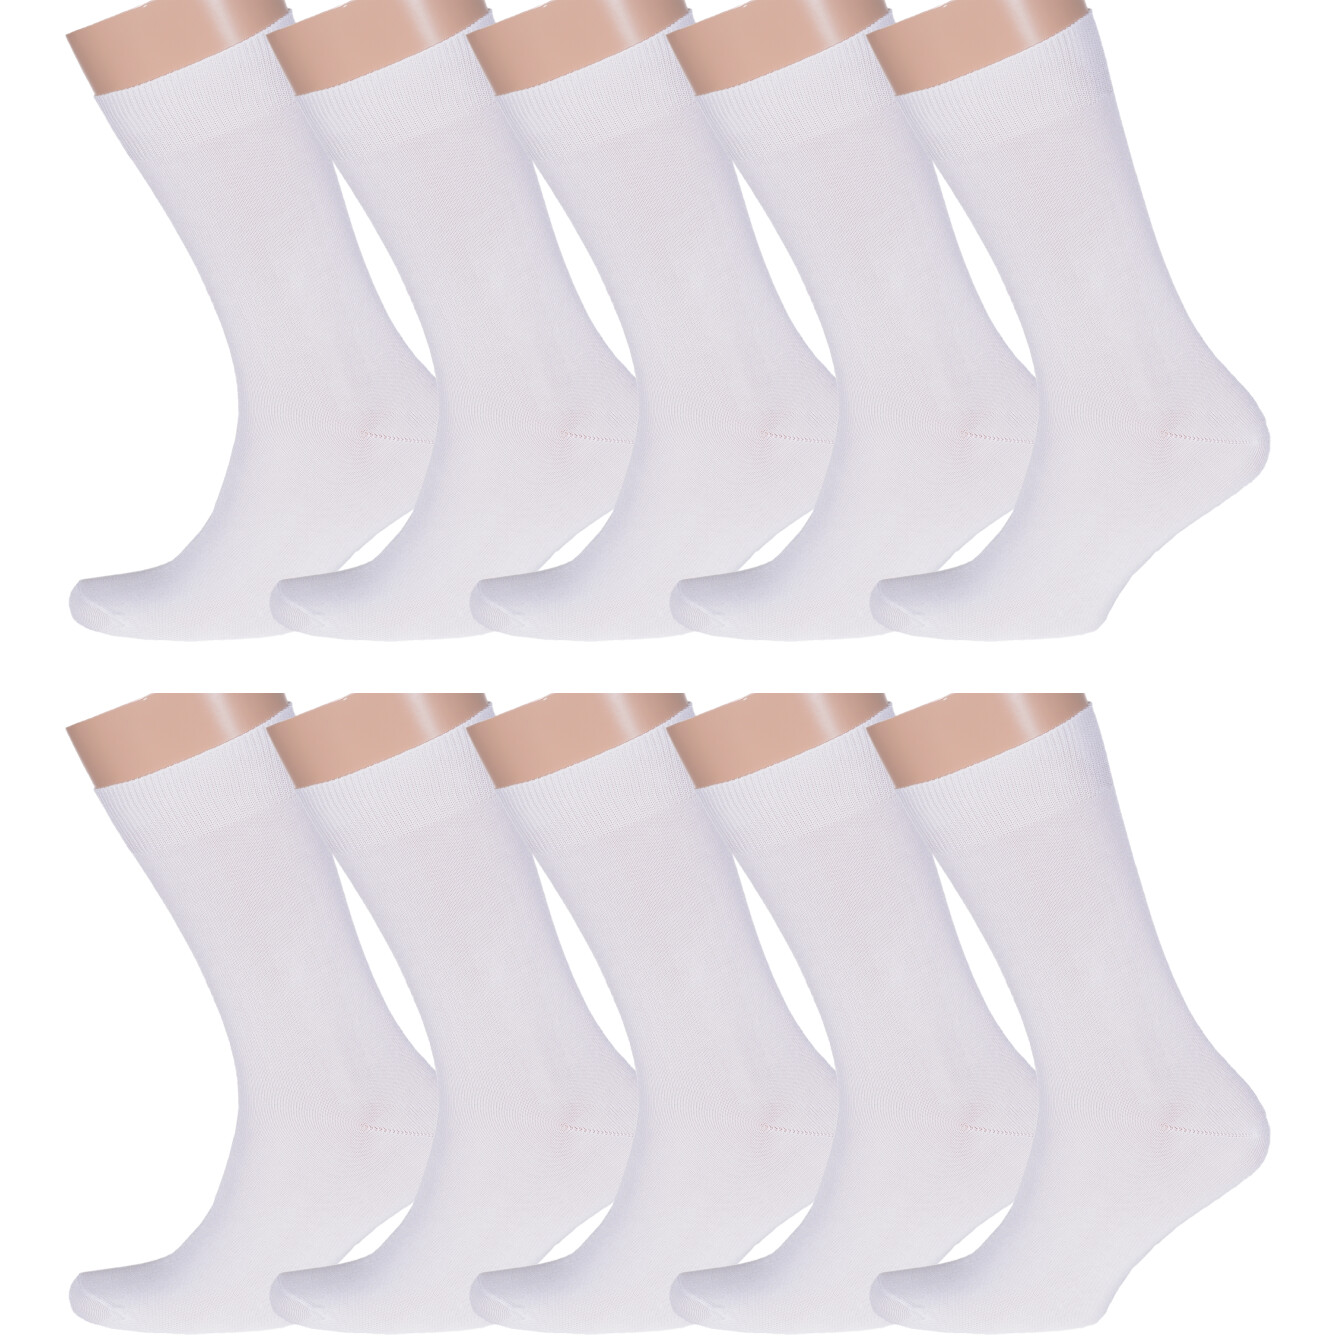 Комплект носков мужских Rusocks 10-М-370 белых 27 10 пар